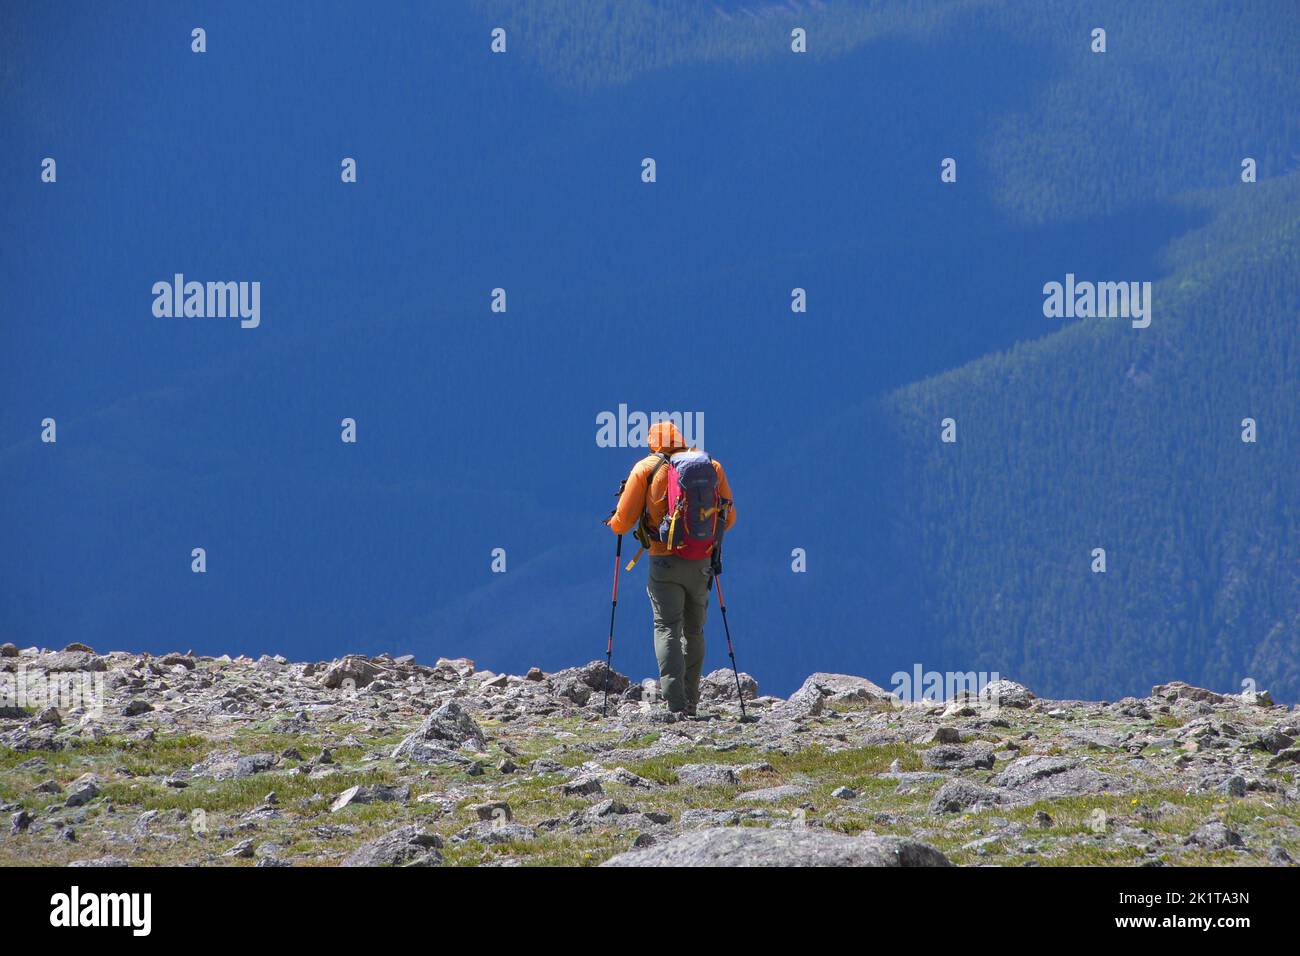 Un uomo con equipaggiamento completo per camminare in montagna e bastoni da passeggio fa il suo ritorno dal Monte Elbert in Colorado Stati Uniti Foto Stock